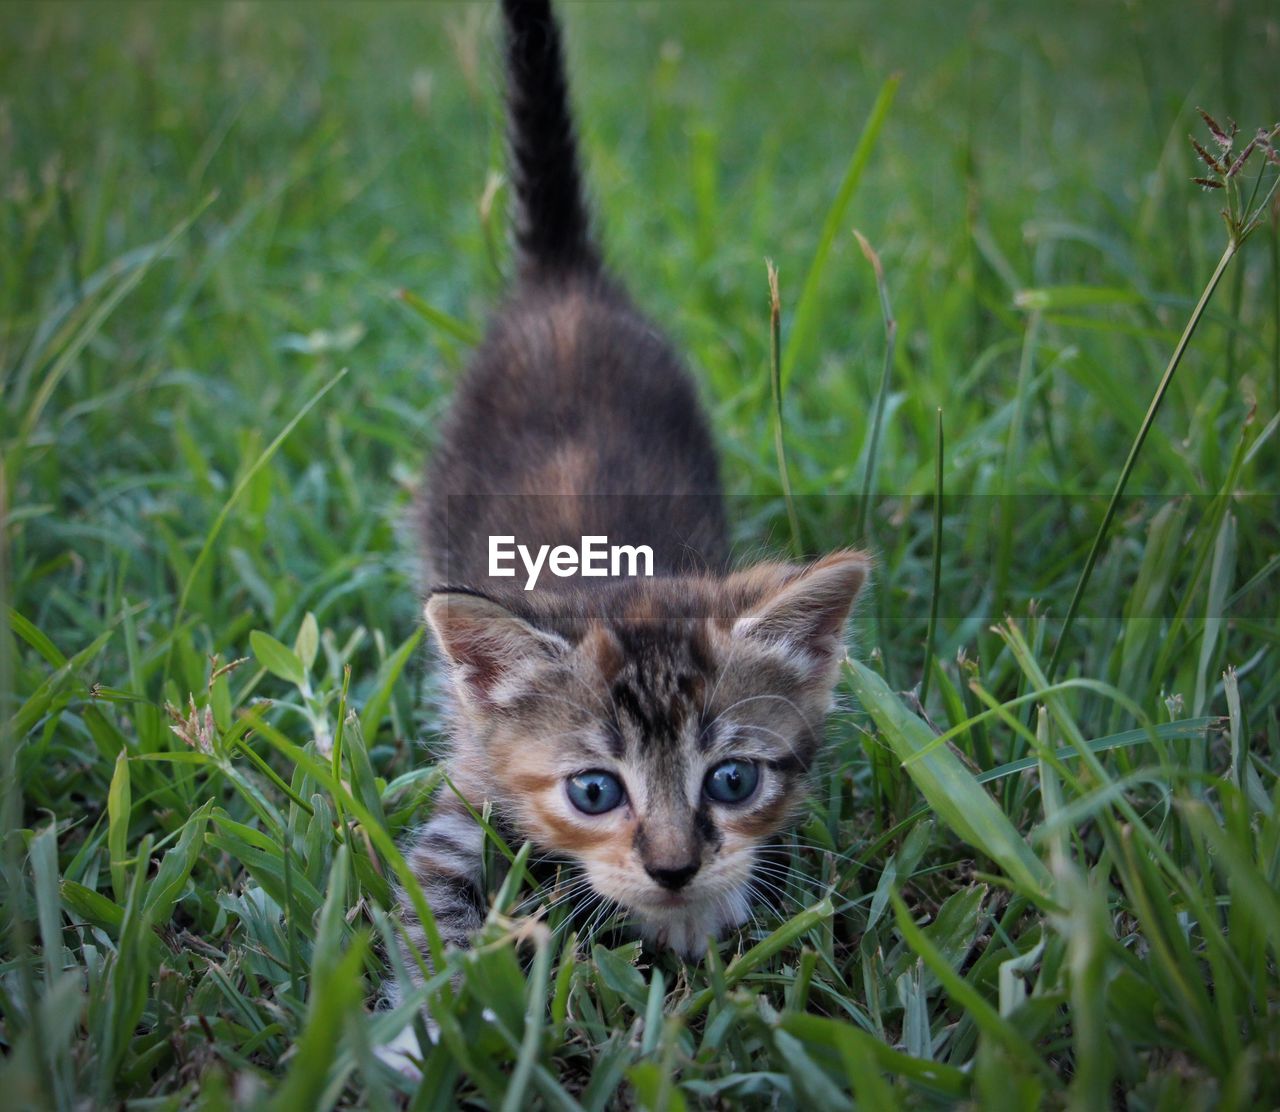 Portrait of kitten on a field